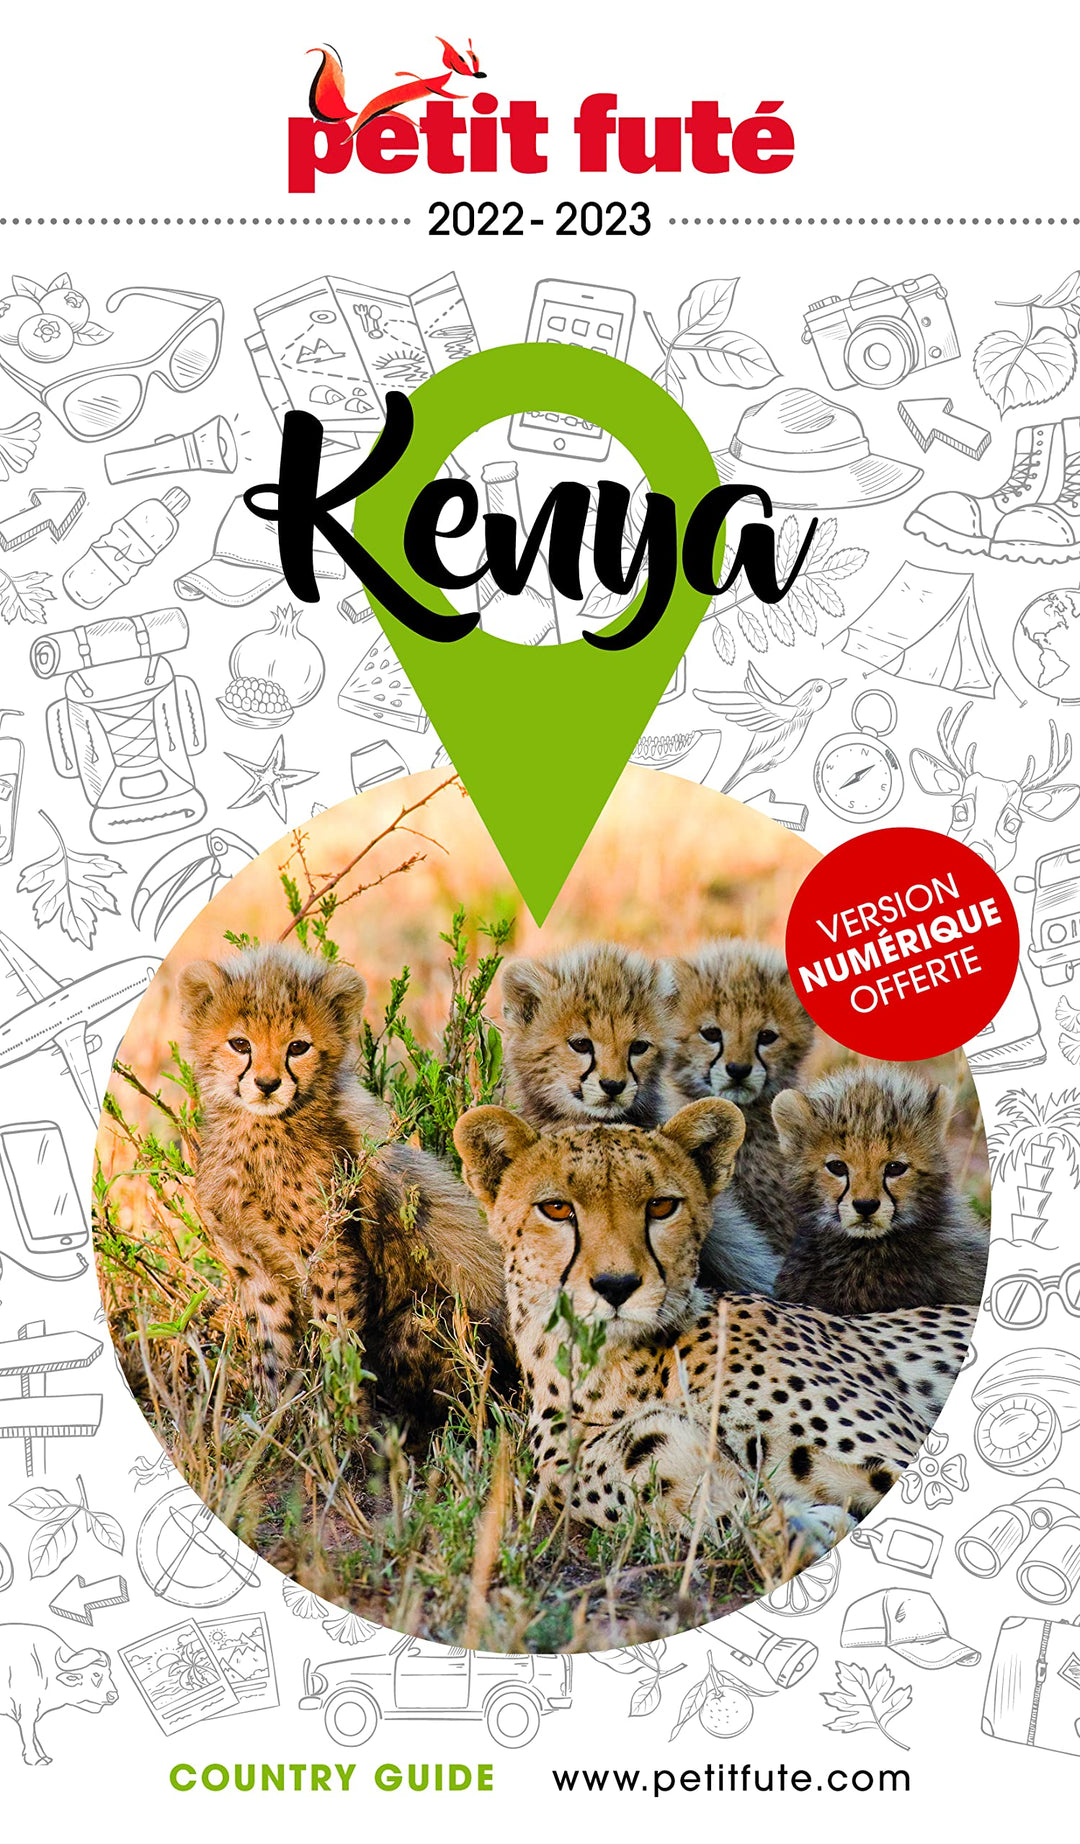 Guide de voyage - Kenya 2022/23 | Petit Futé guide de voyage Petit Futé 